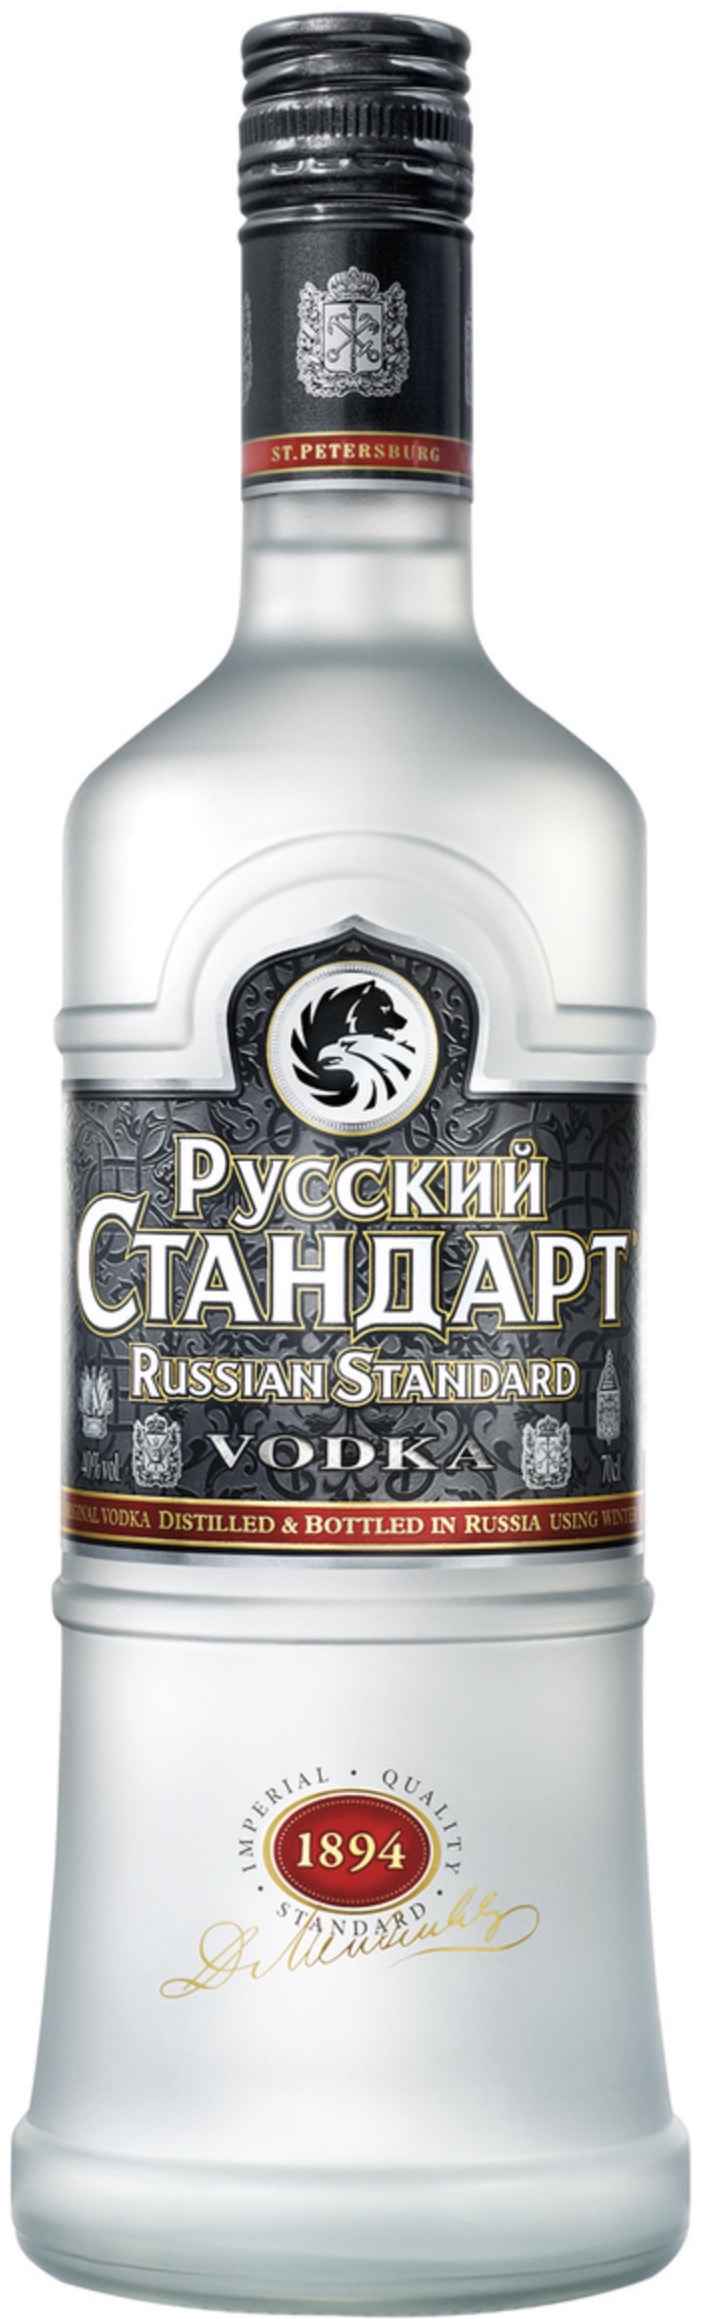 Russian Standard Original Vodka 40% vol. 0,7L